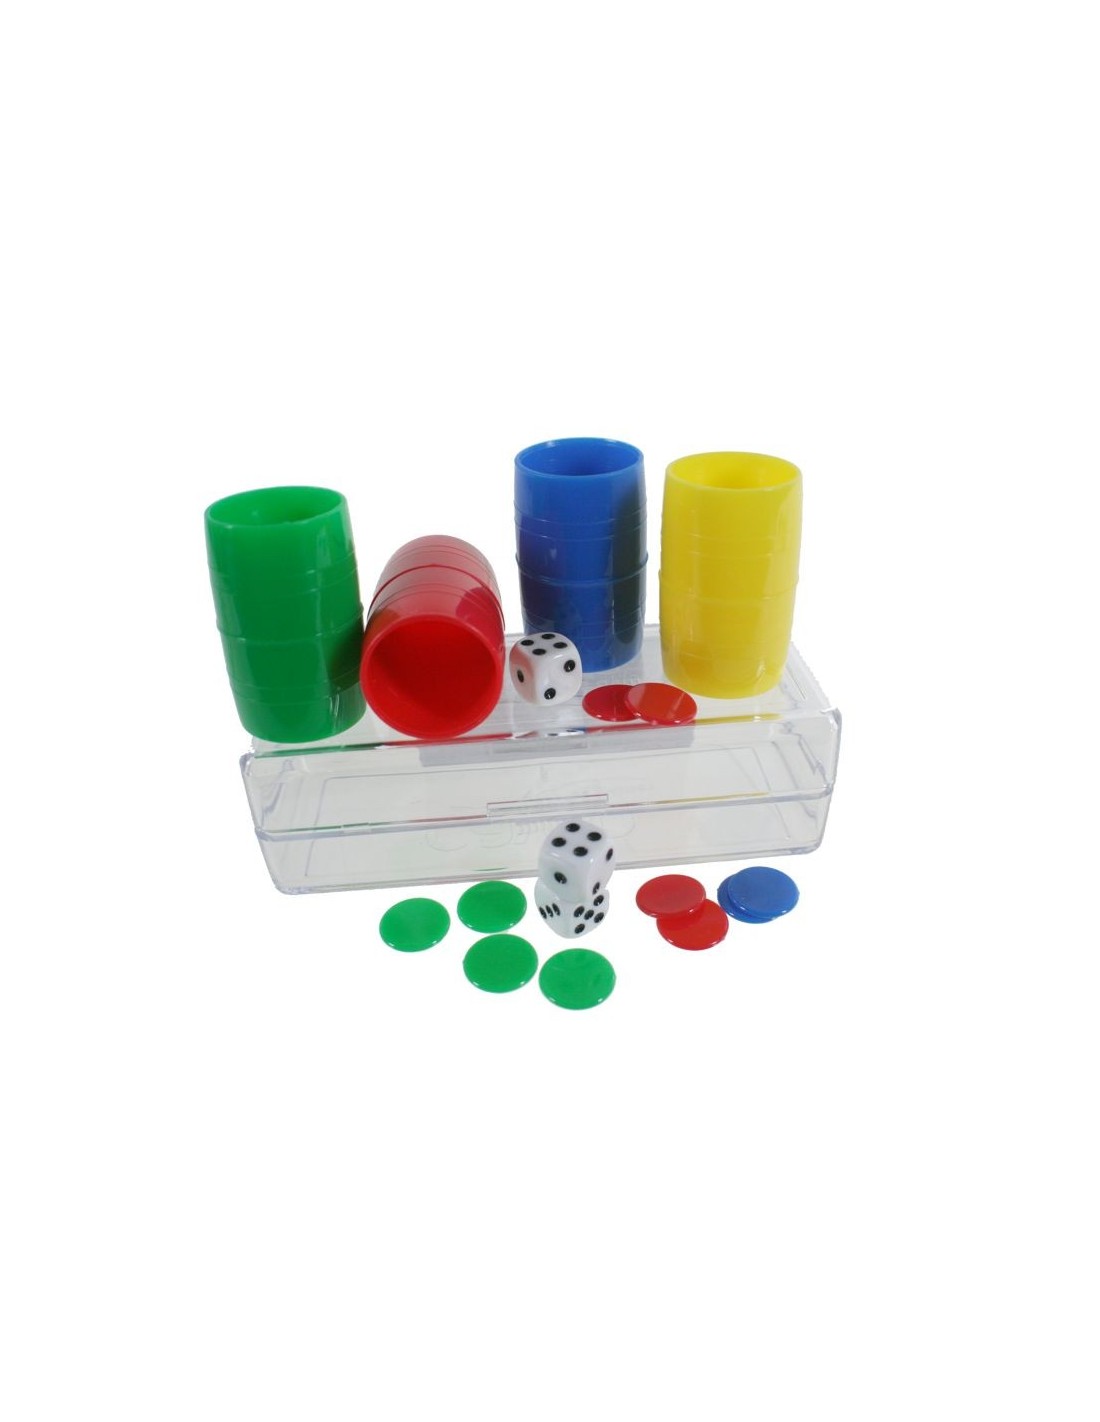 Fichas de parchís para 4 jugadores con barriletes y fichas de colores accesorio para juego clásico de mesa